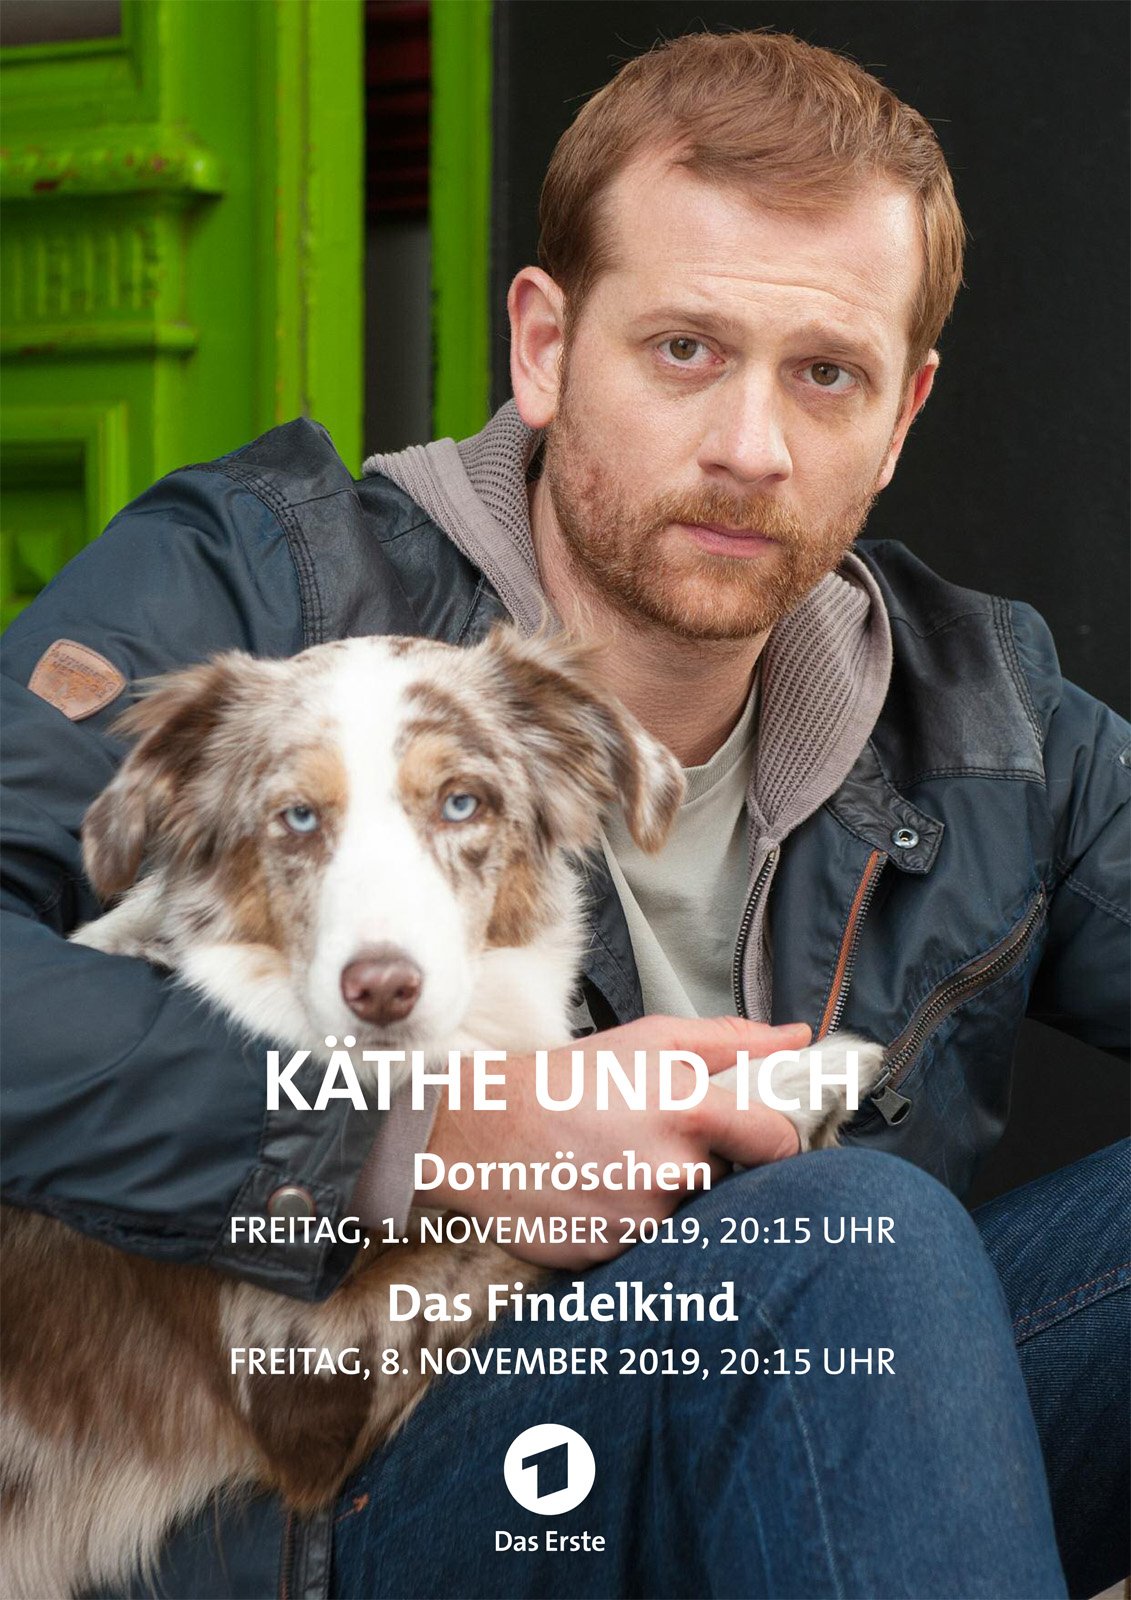 Käthe und ich: Das Findelkind: schauspieler, regie, produktion - Filme